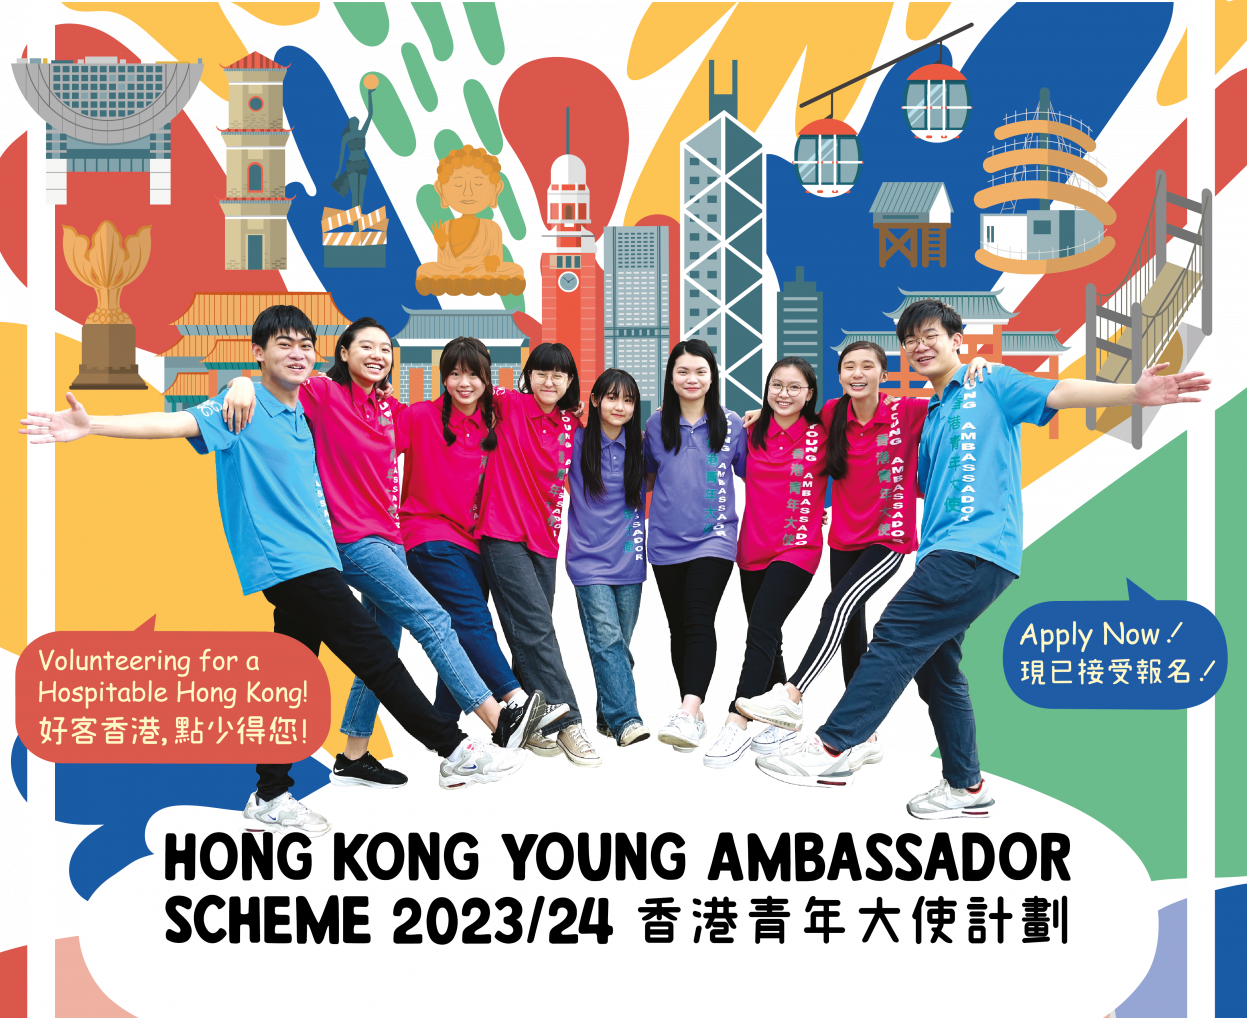 「2023/24香港青年大使計劃」宣傳片